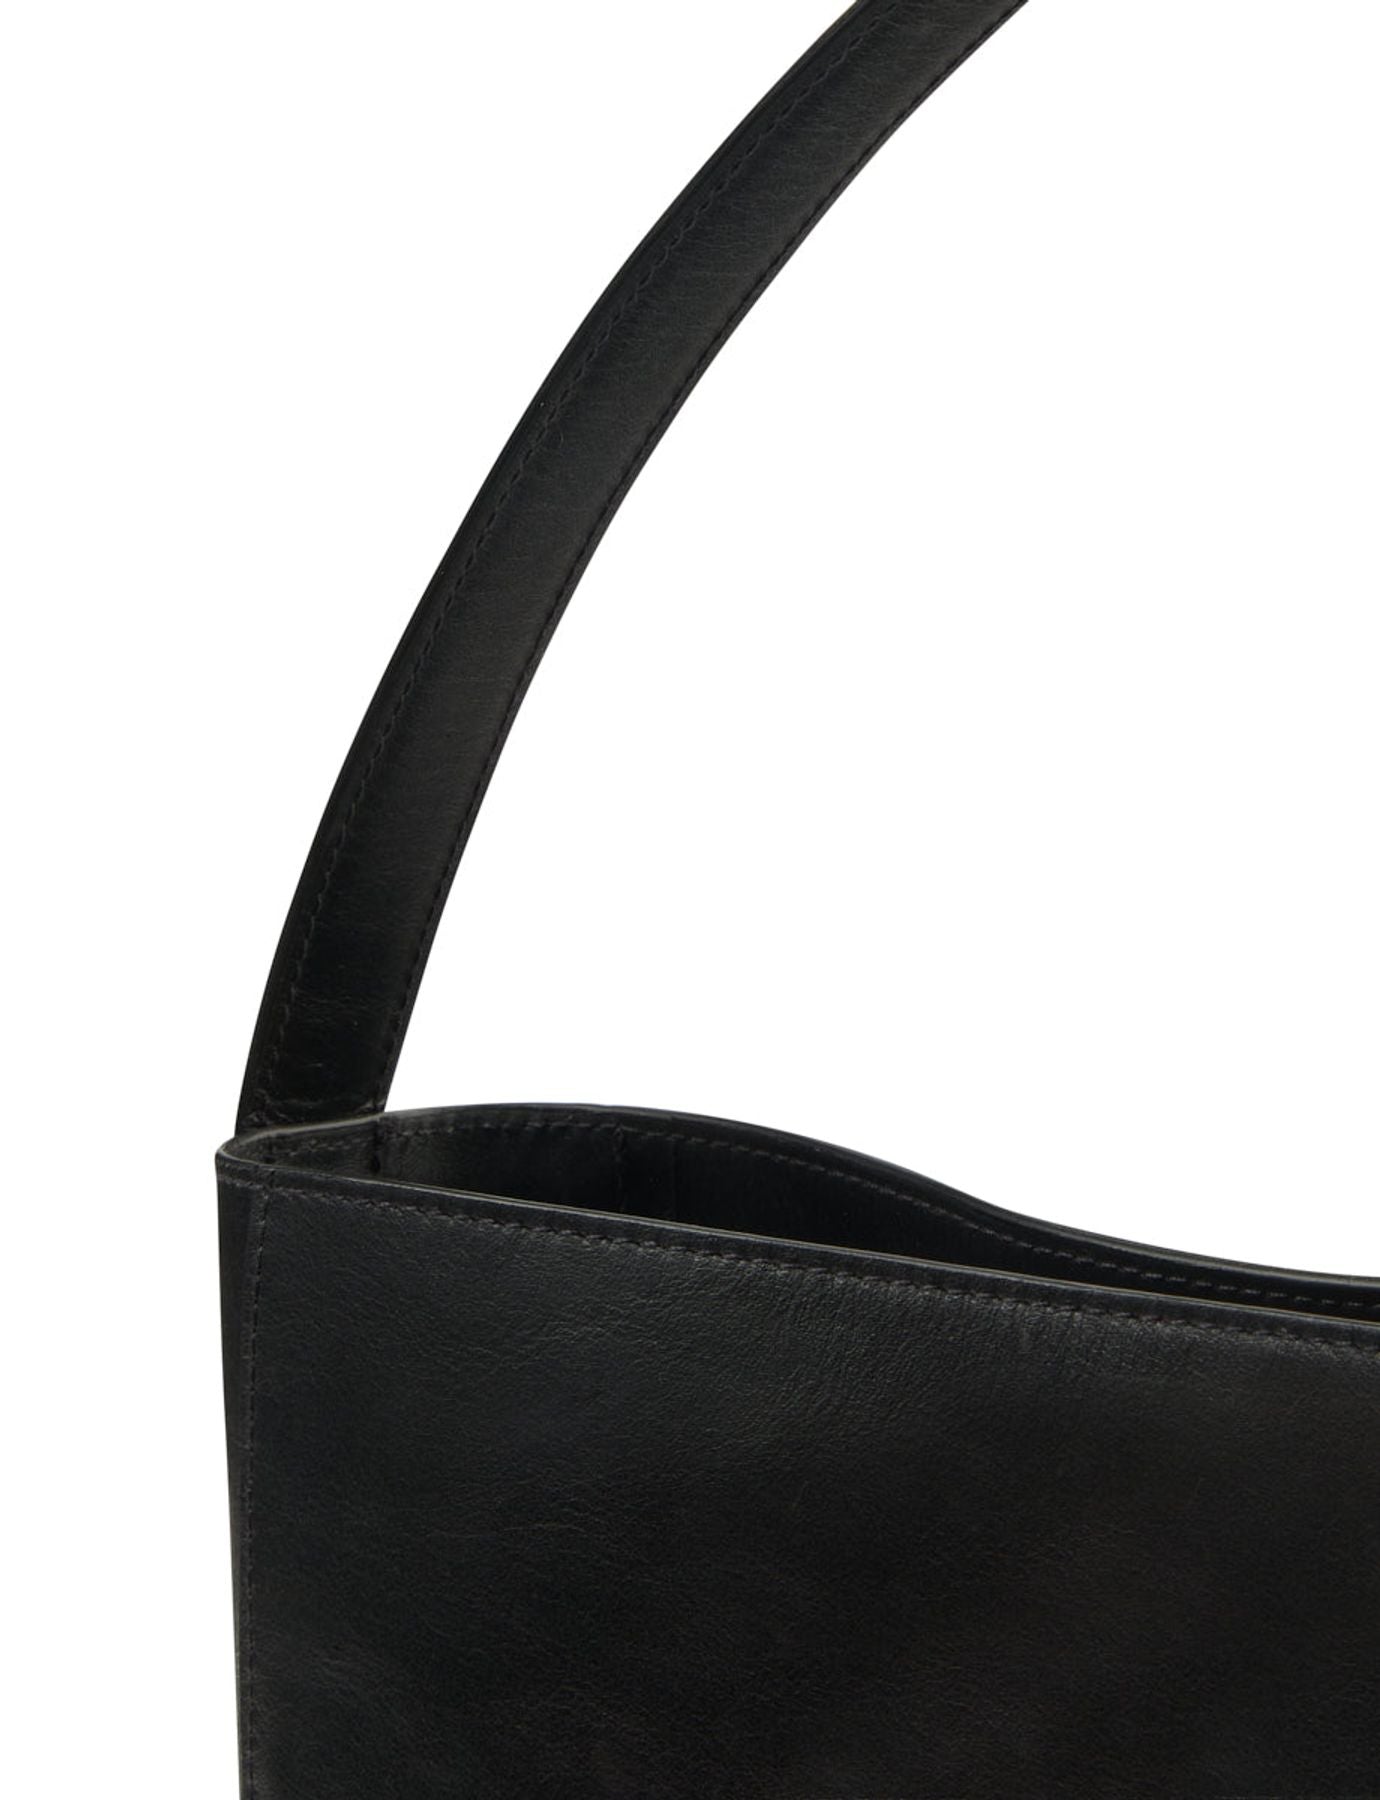 bag-bag-leather-leonore-large-format-black